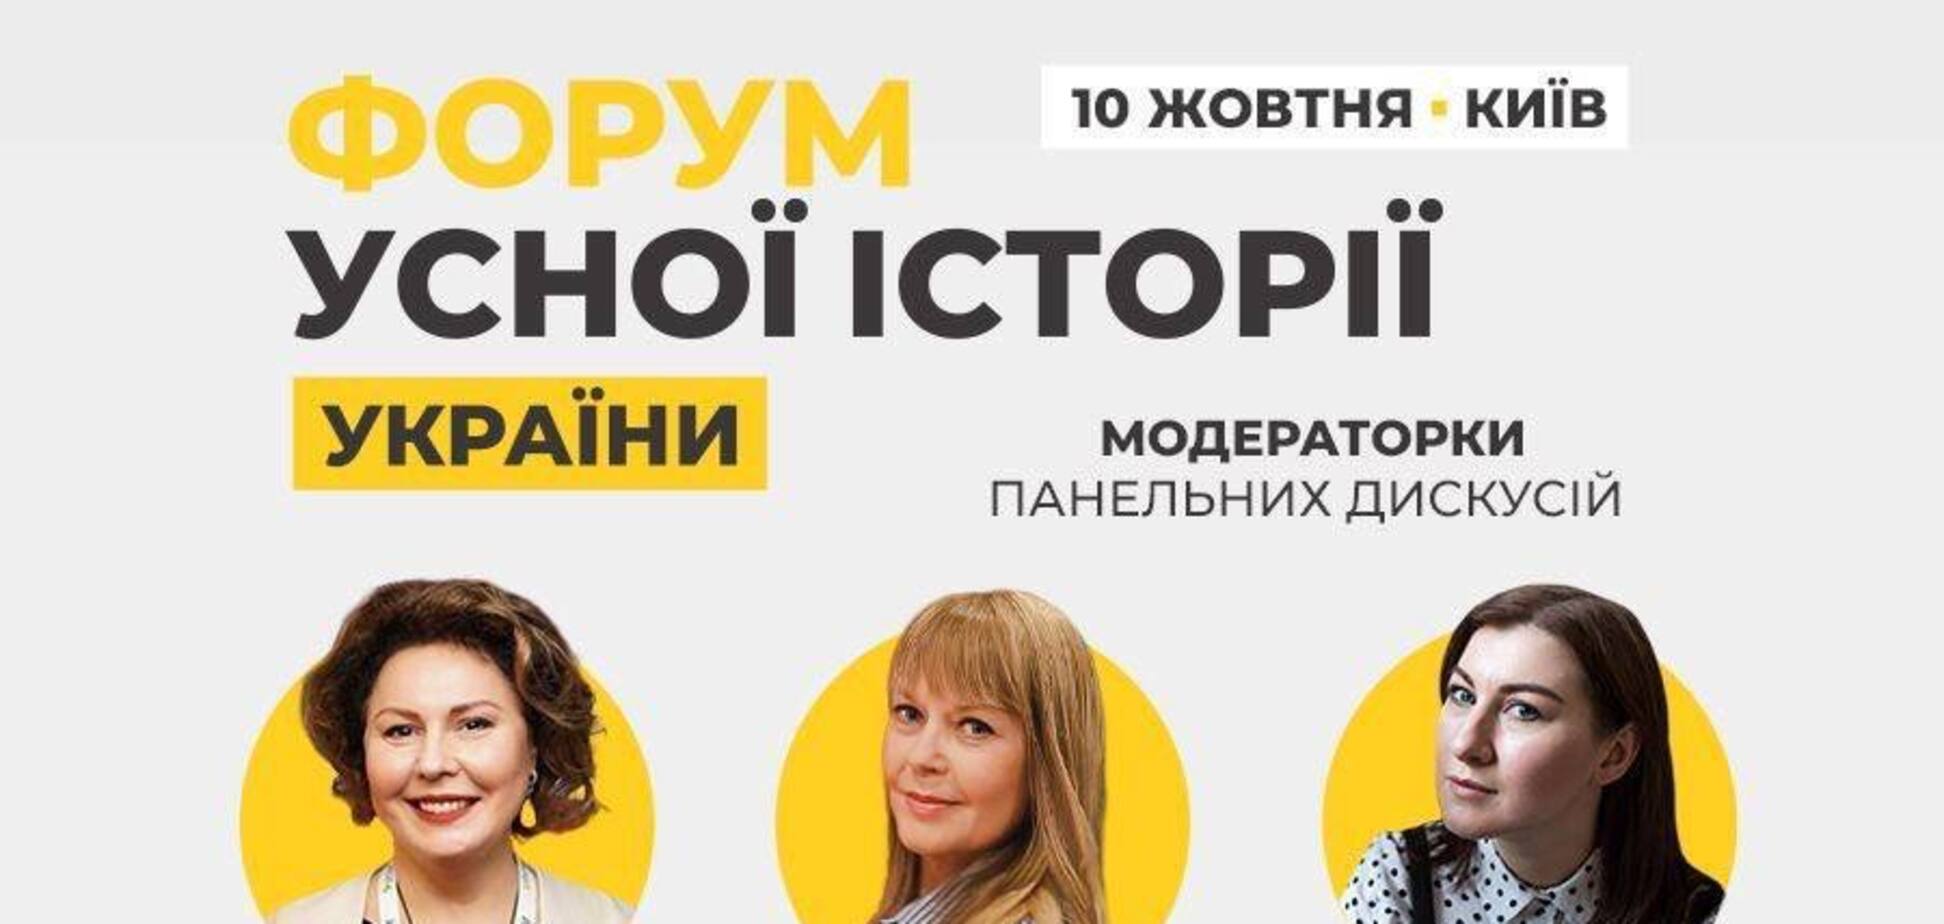 'Форум устной истории Украины', инициированный музеем 'Голоса Мирных', раскрыл темы программы и модераторок дискуссий